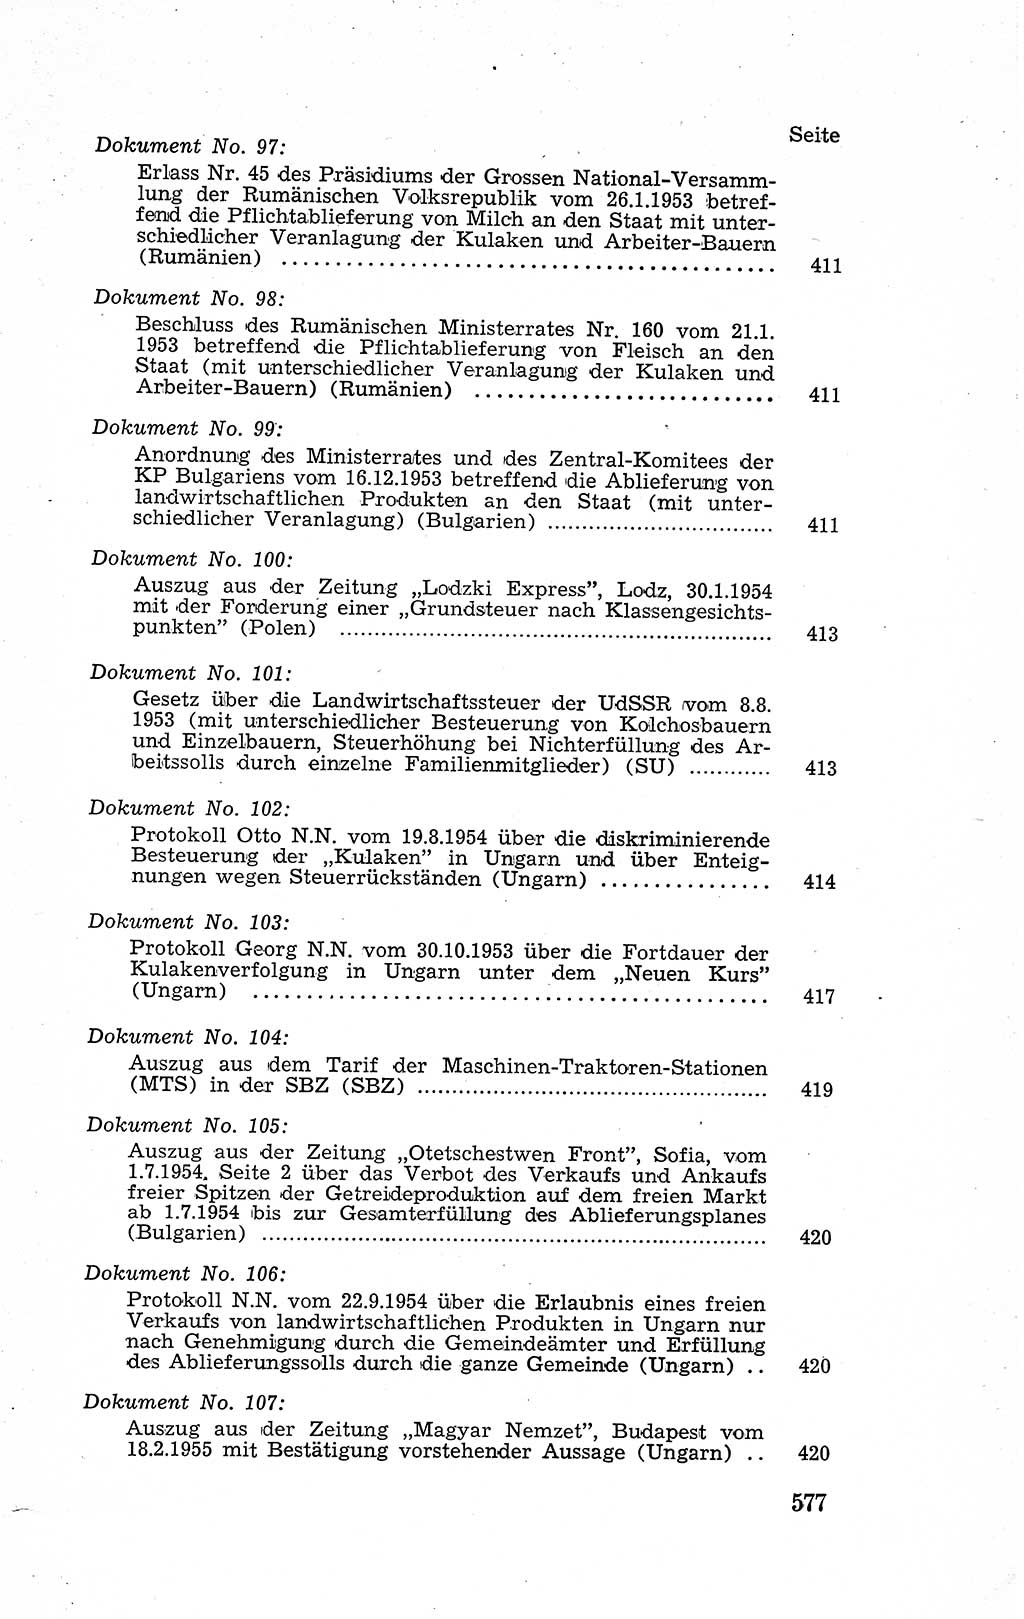 Recht in Fesseln, Dokumente, Internationale Juristen-Kommission [Bundesrepublik Deutschland (BRD)] 1955, Seite 577 (R. Dok. IJK BRD 1955, S. 577)